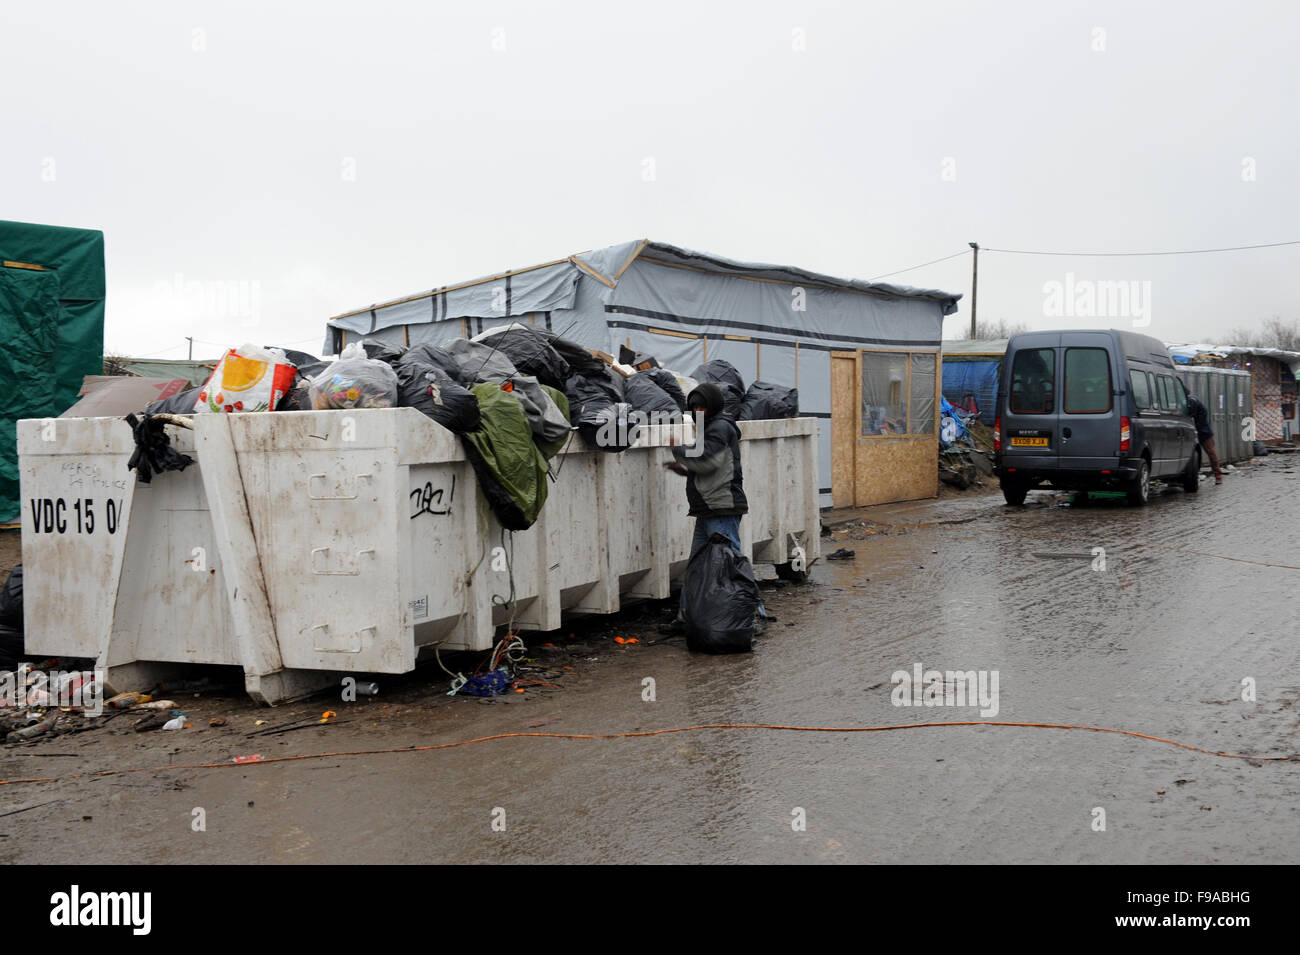 Jungle, Calais, France. Un tas de sacs noirs réfugiés d'ordures dans l'ignore que le gouvernement français dans une tentative de rendre le camp plus propre. Le jour est gris et il pleuvait. Banque D'Images